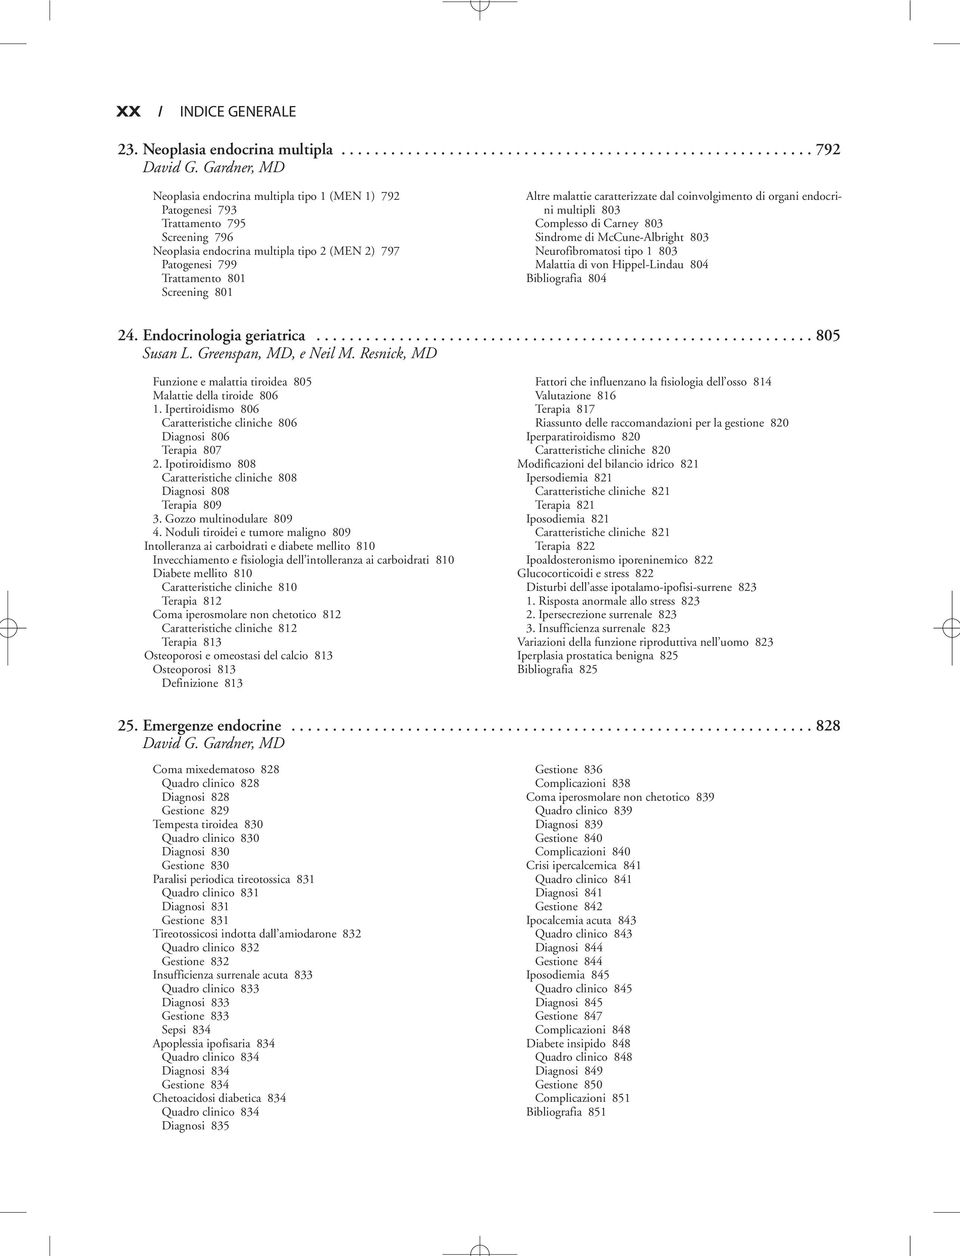 Altre malattie caratterizzate dal coinvolgimento di organi endocrini multipli 803 Complesso di Carney 803 Sindrome di McCune-Albright 803 Neurofibromatosi tipo 1 803 Malattia di von Hippel-Lindau 804